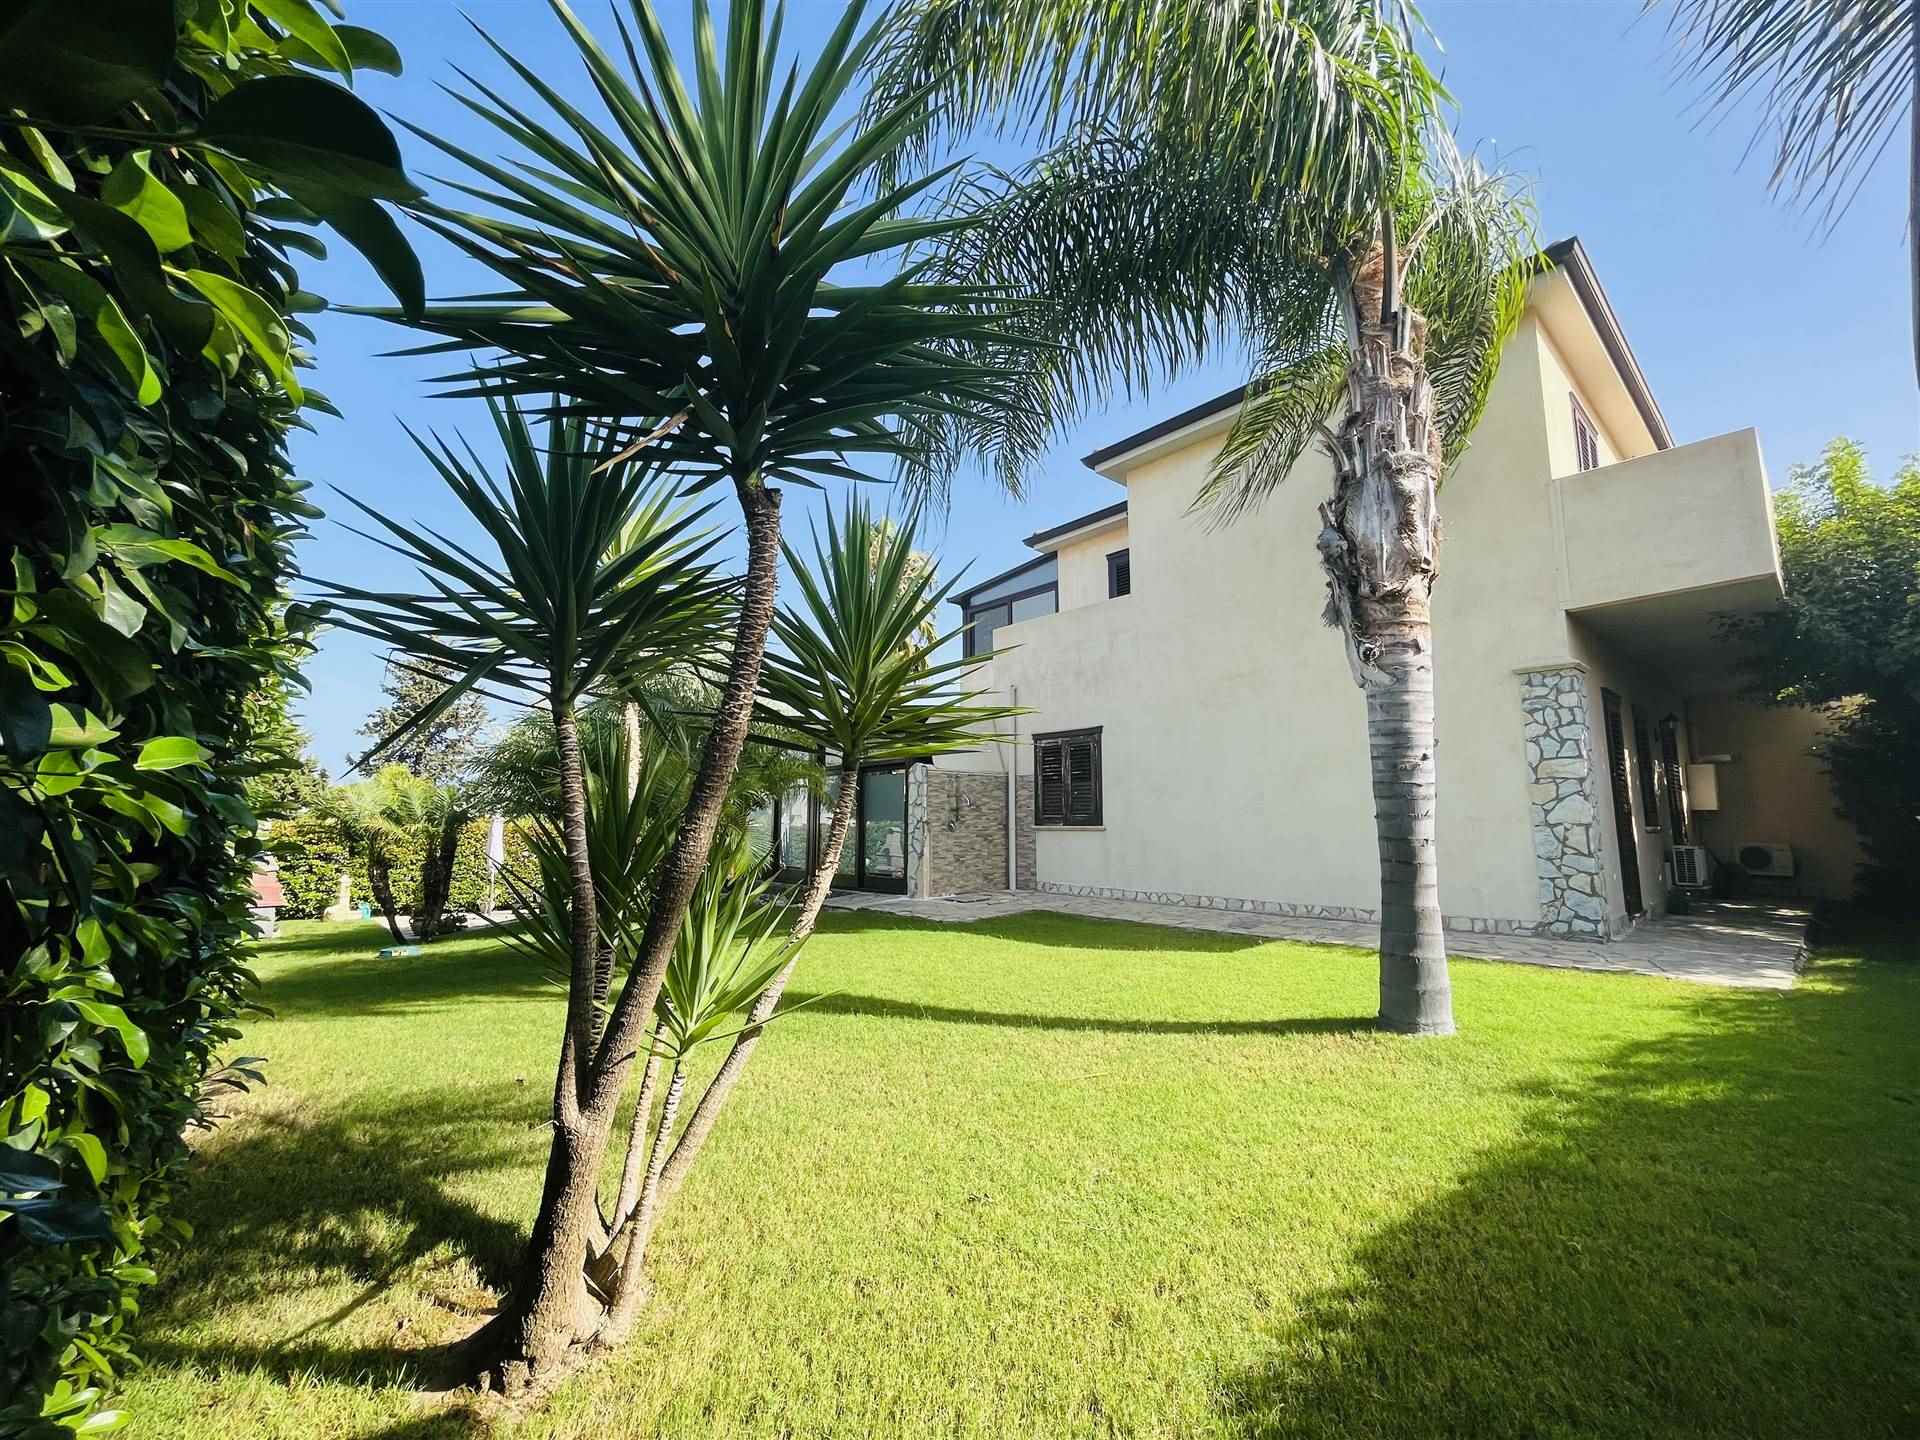 Villa Bifamiliare in vendita a Campofelice di Roccella, 4 locali, prezzo € 185.000 | PortaleAgenzieImmobiliari.it